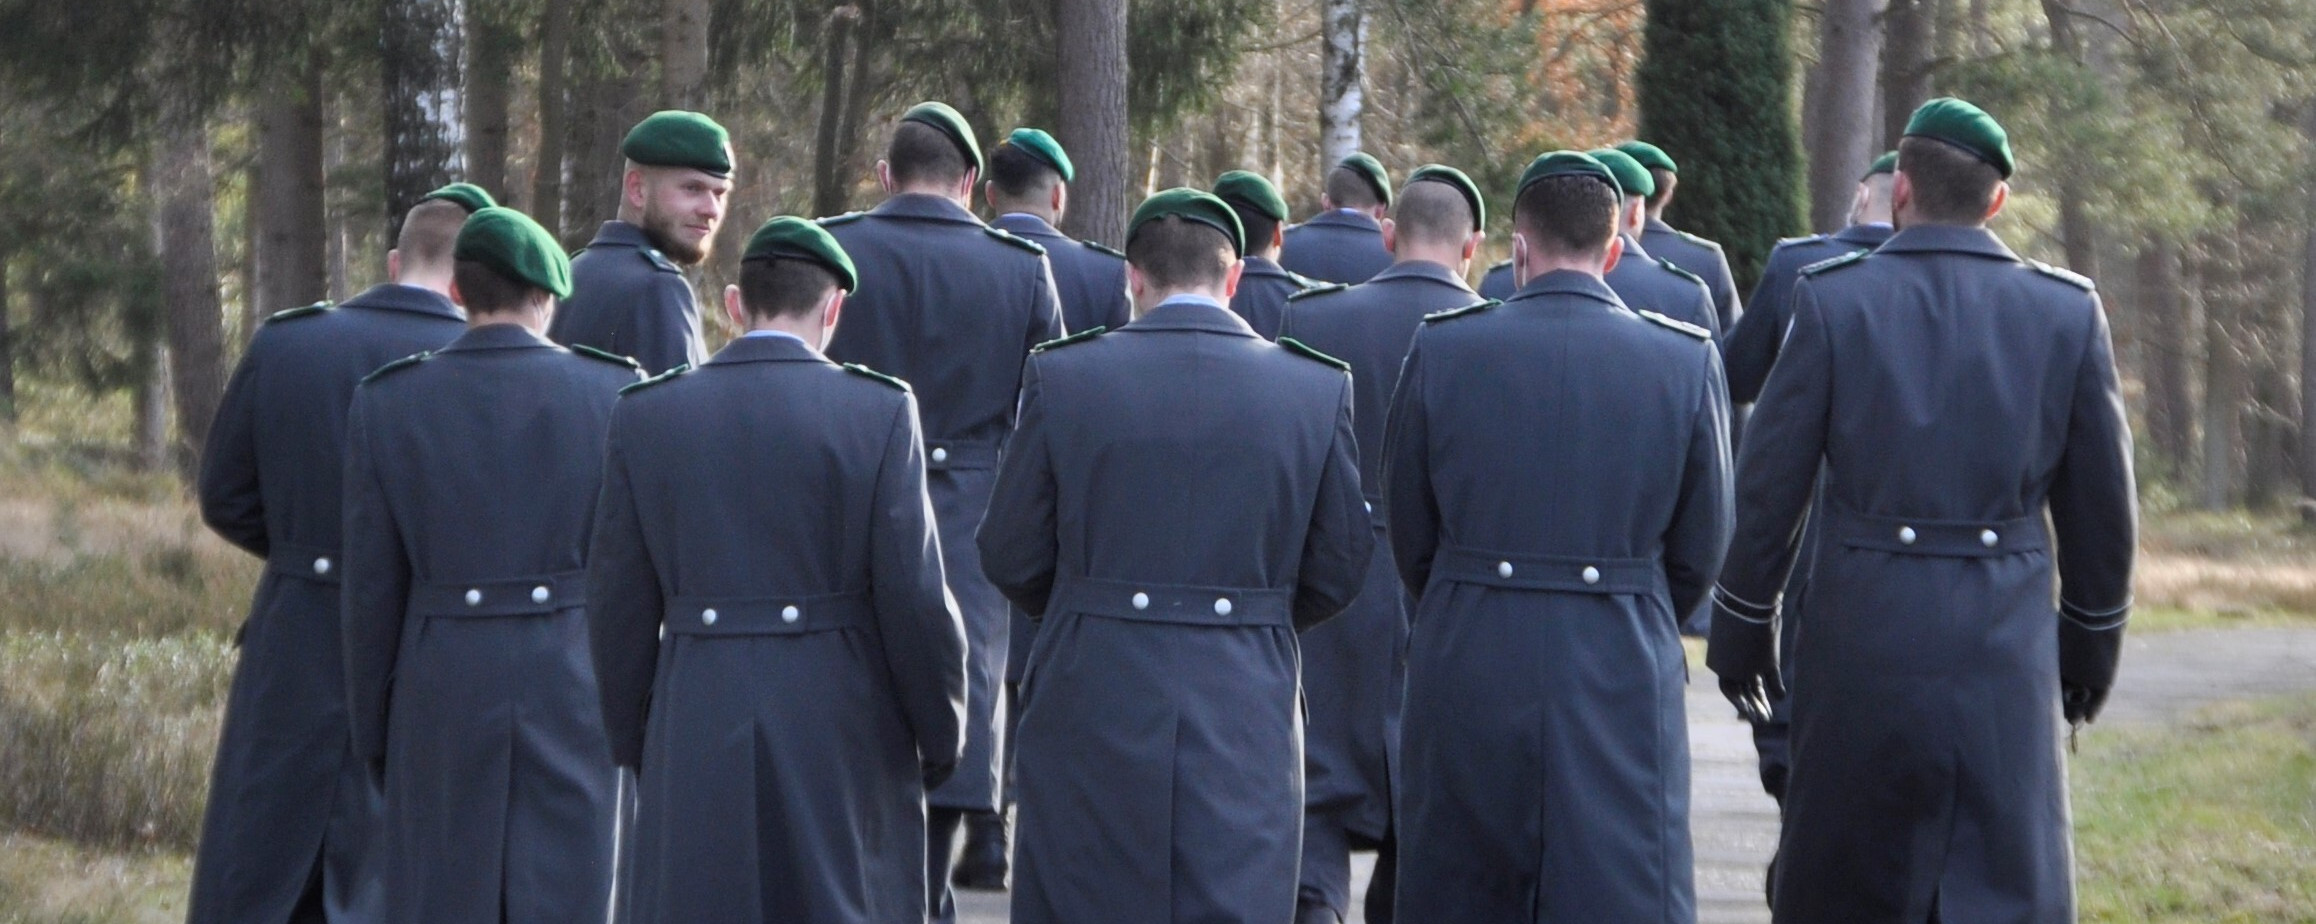 Soldaten der Bundeswehr in der Gedenkstätte Bergen-Belsen (Tessa Bouwmann)